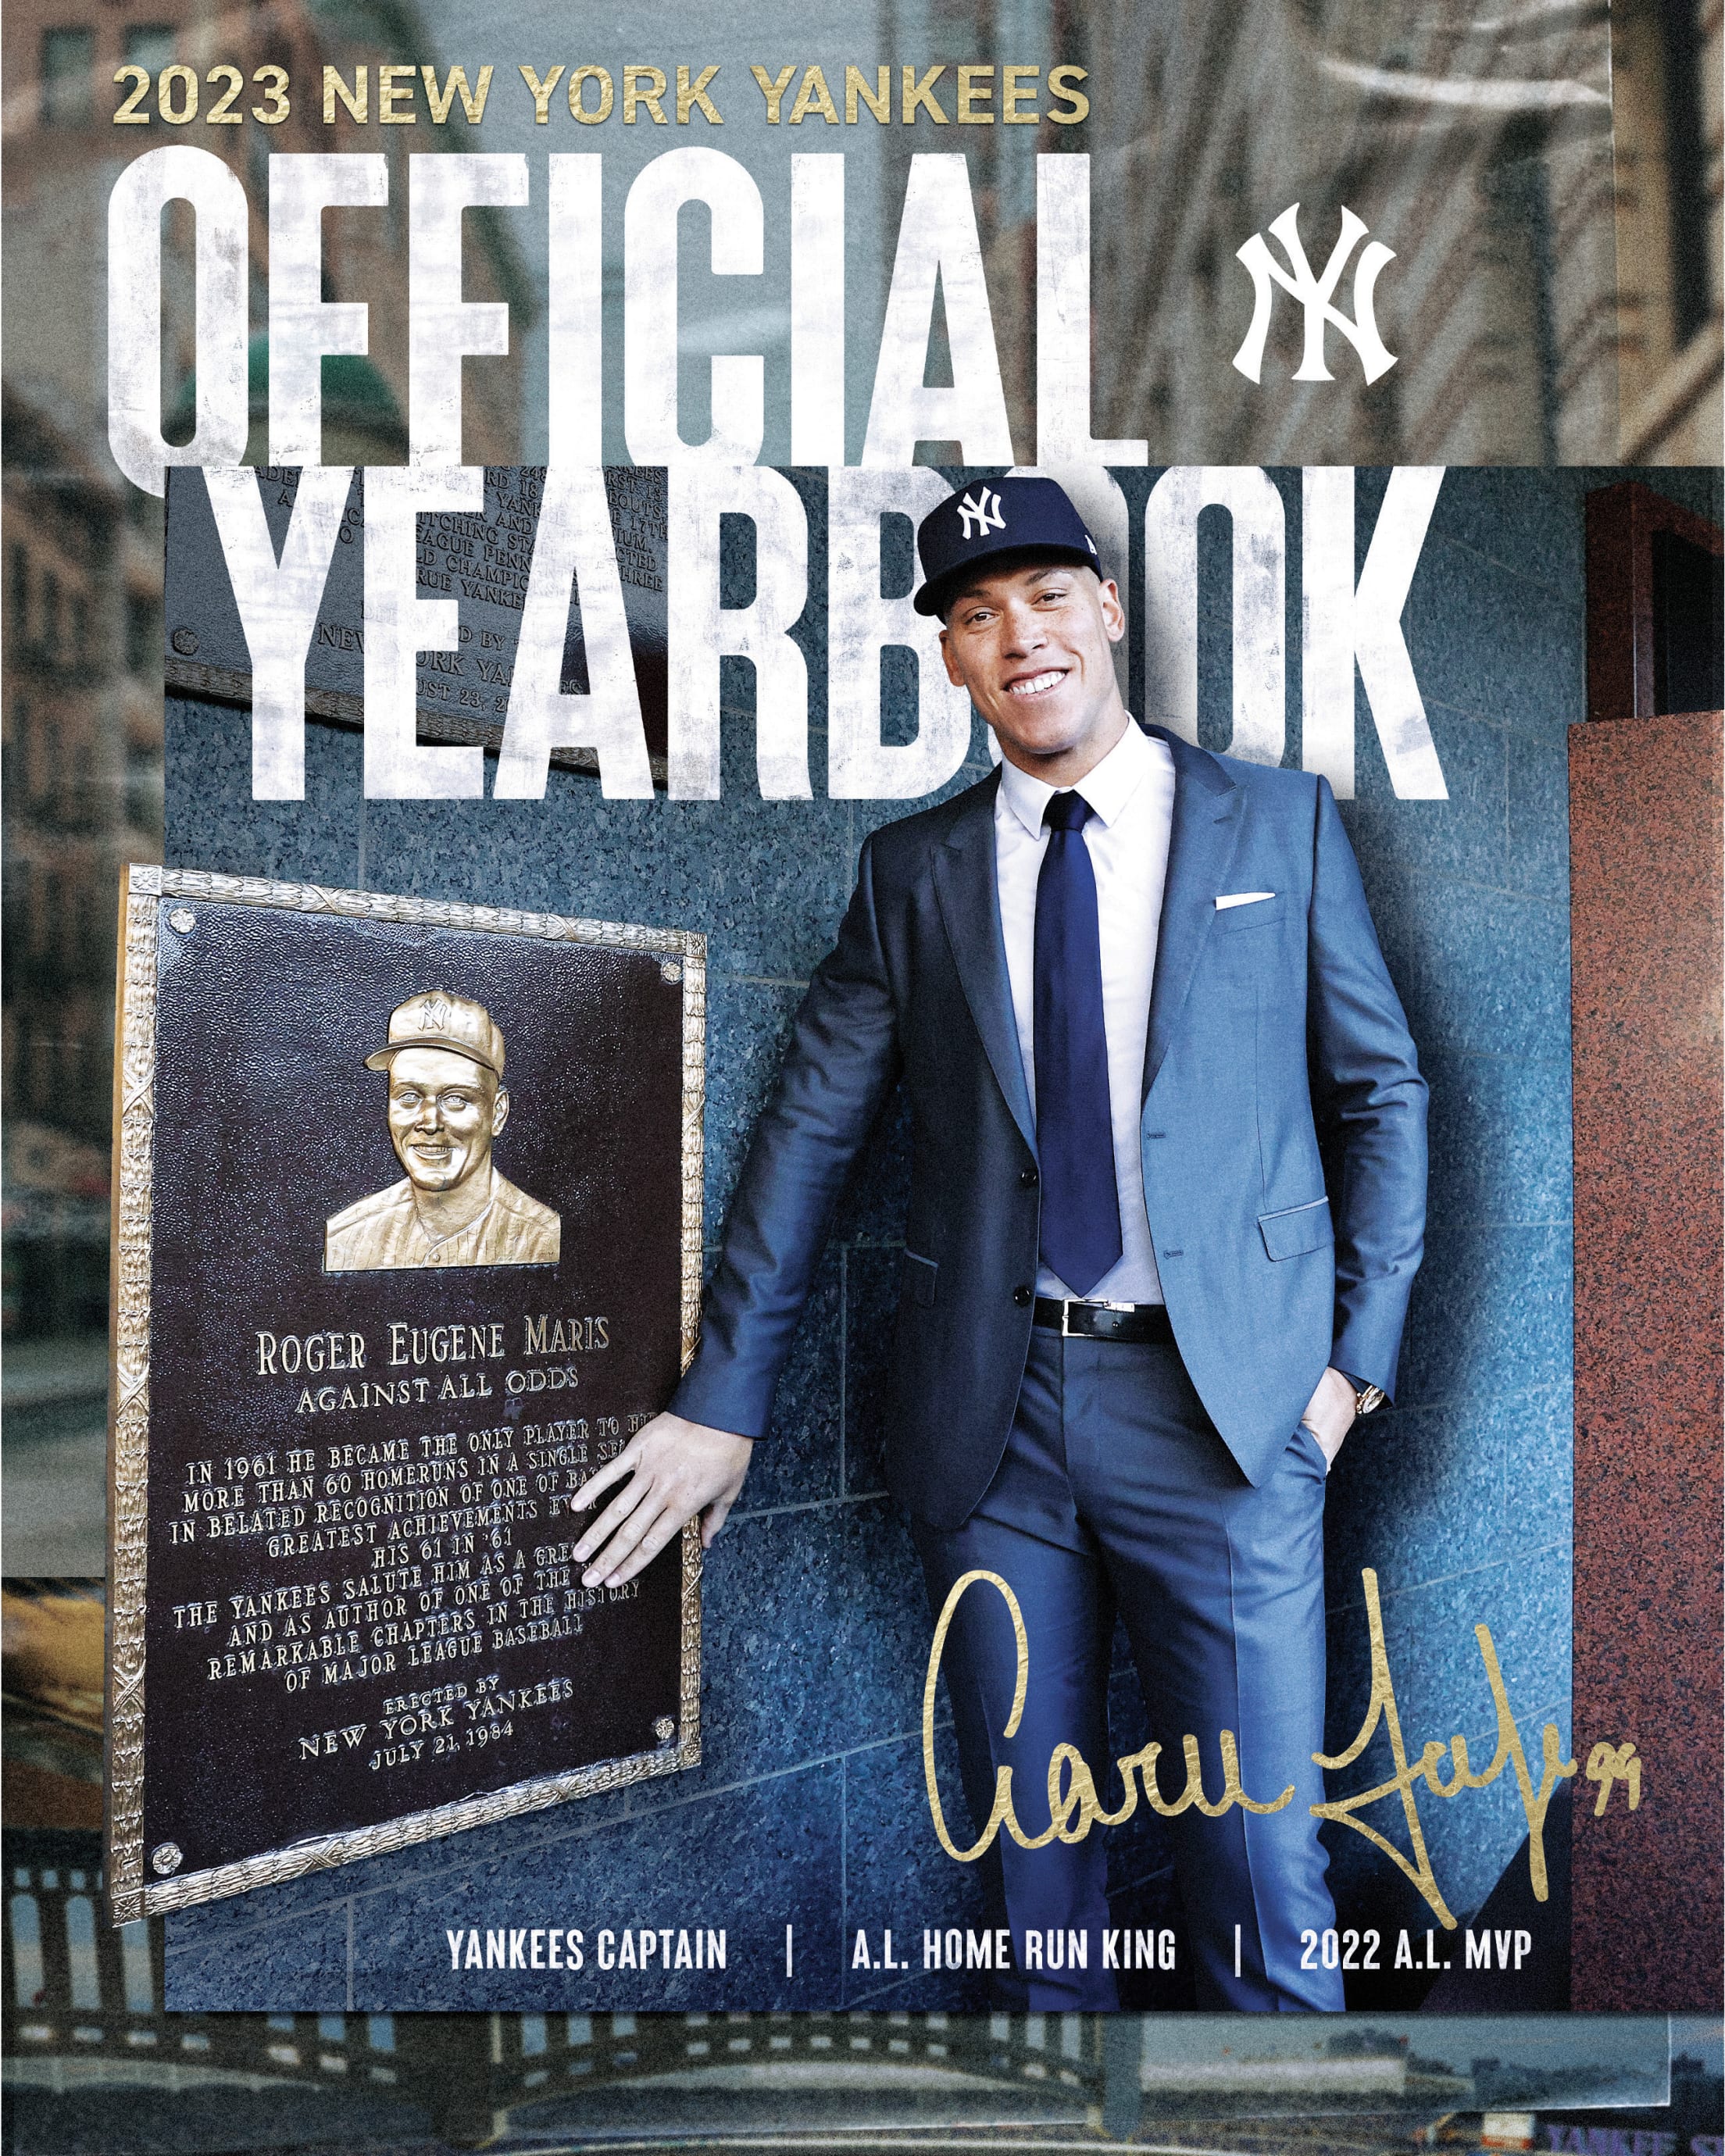 2013 LAD Media Guide, PDF, Major League Baseball